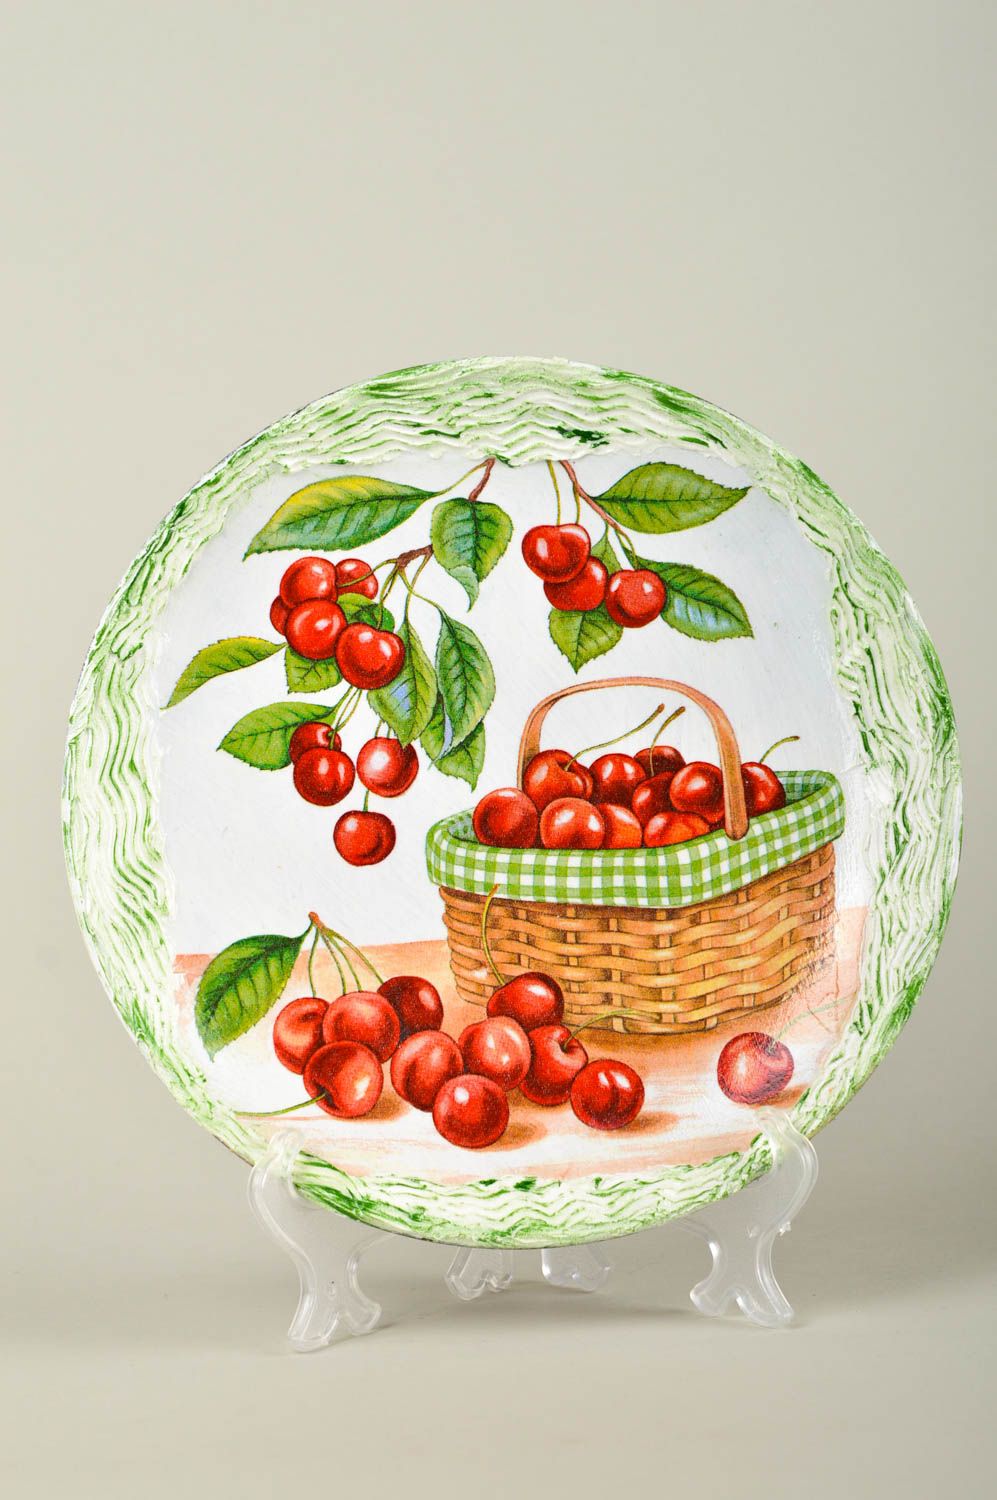 Керамика ручной работы с вишнями керамическая тарелка декор для кваритиры фото 1